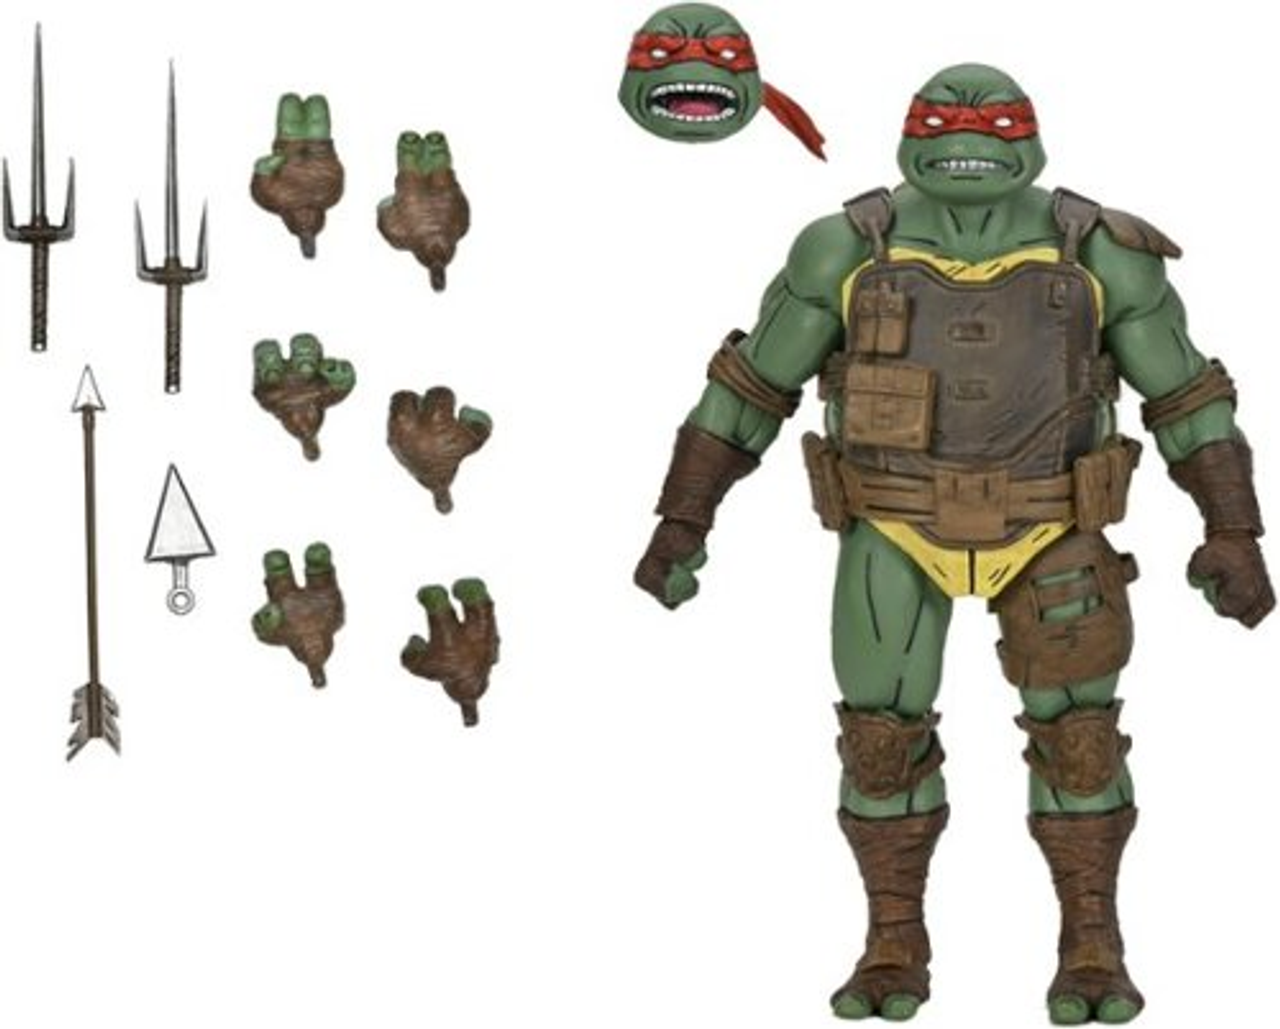 NECA - Teenage Mutant Ninja Turtles 7” The Last Ronin - Raphael